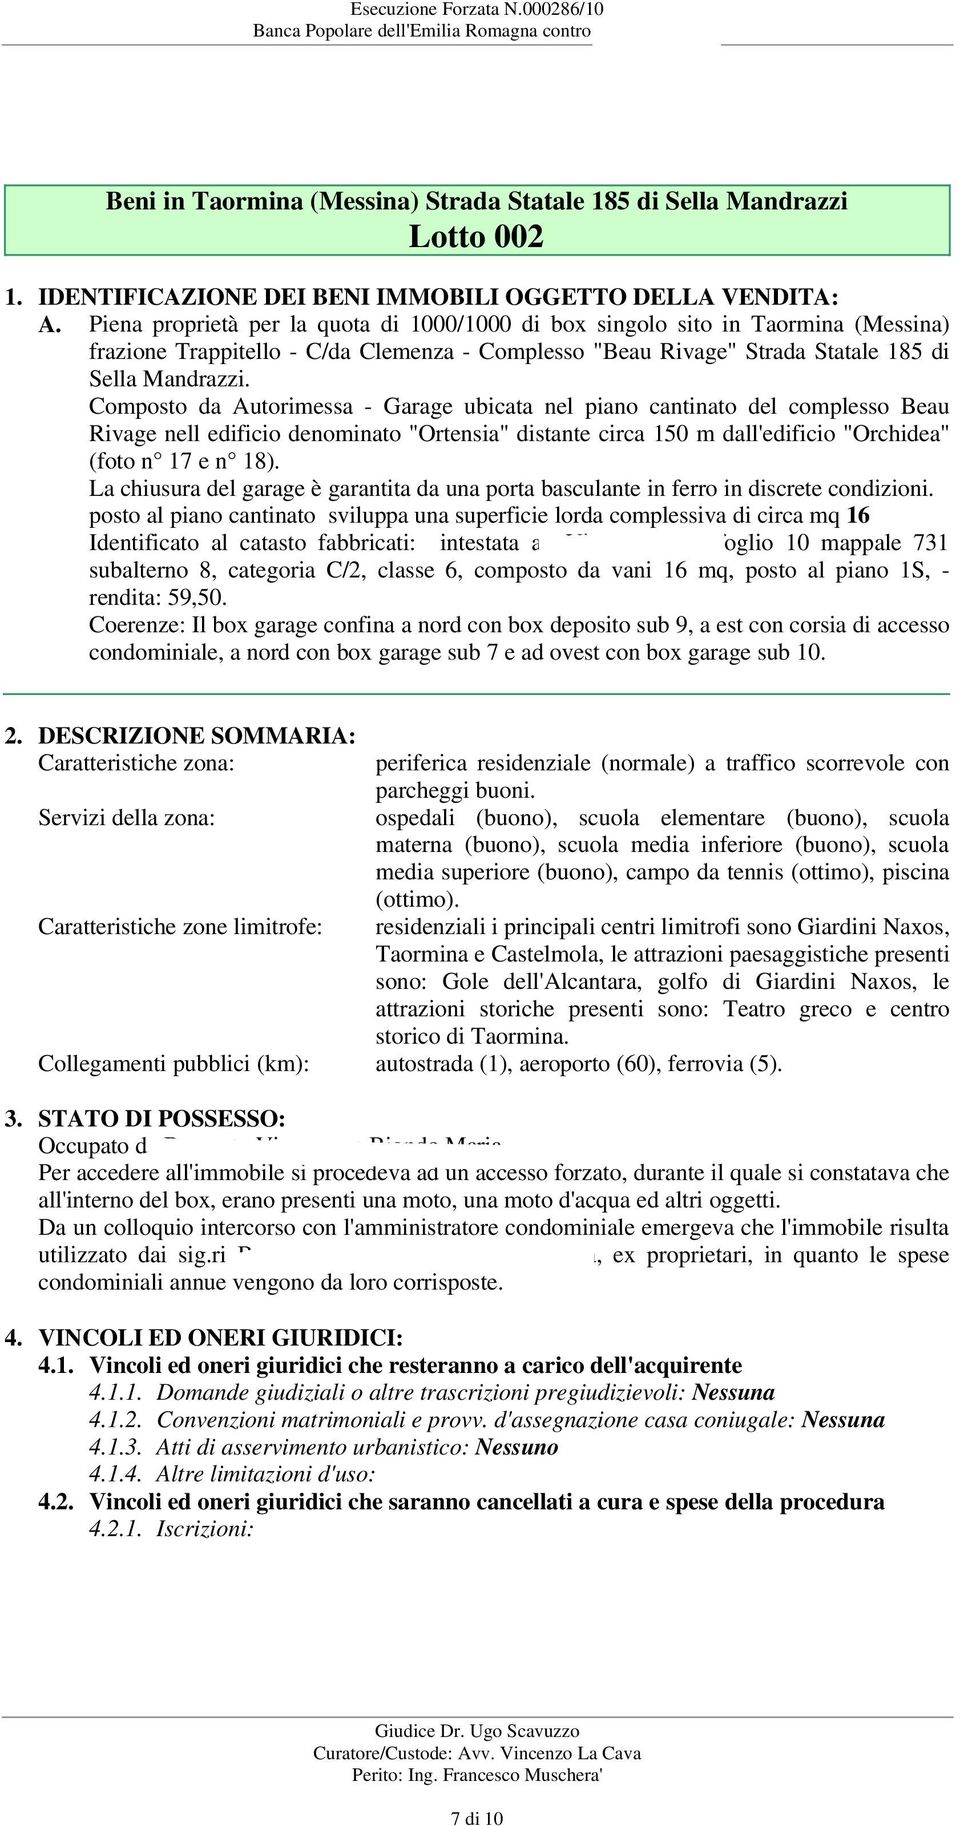 Piena proprietà per la quota di 1000/1000 di box singolo sito in Taormina (Messina) frazione Trappitello - C/da Clemenza - Complesso "Beau Rivage" Strada Statale 185 di Sella Mandrazzi.